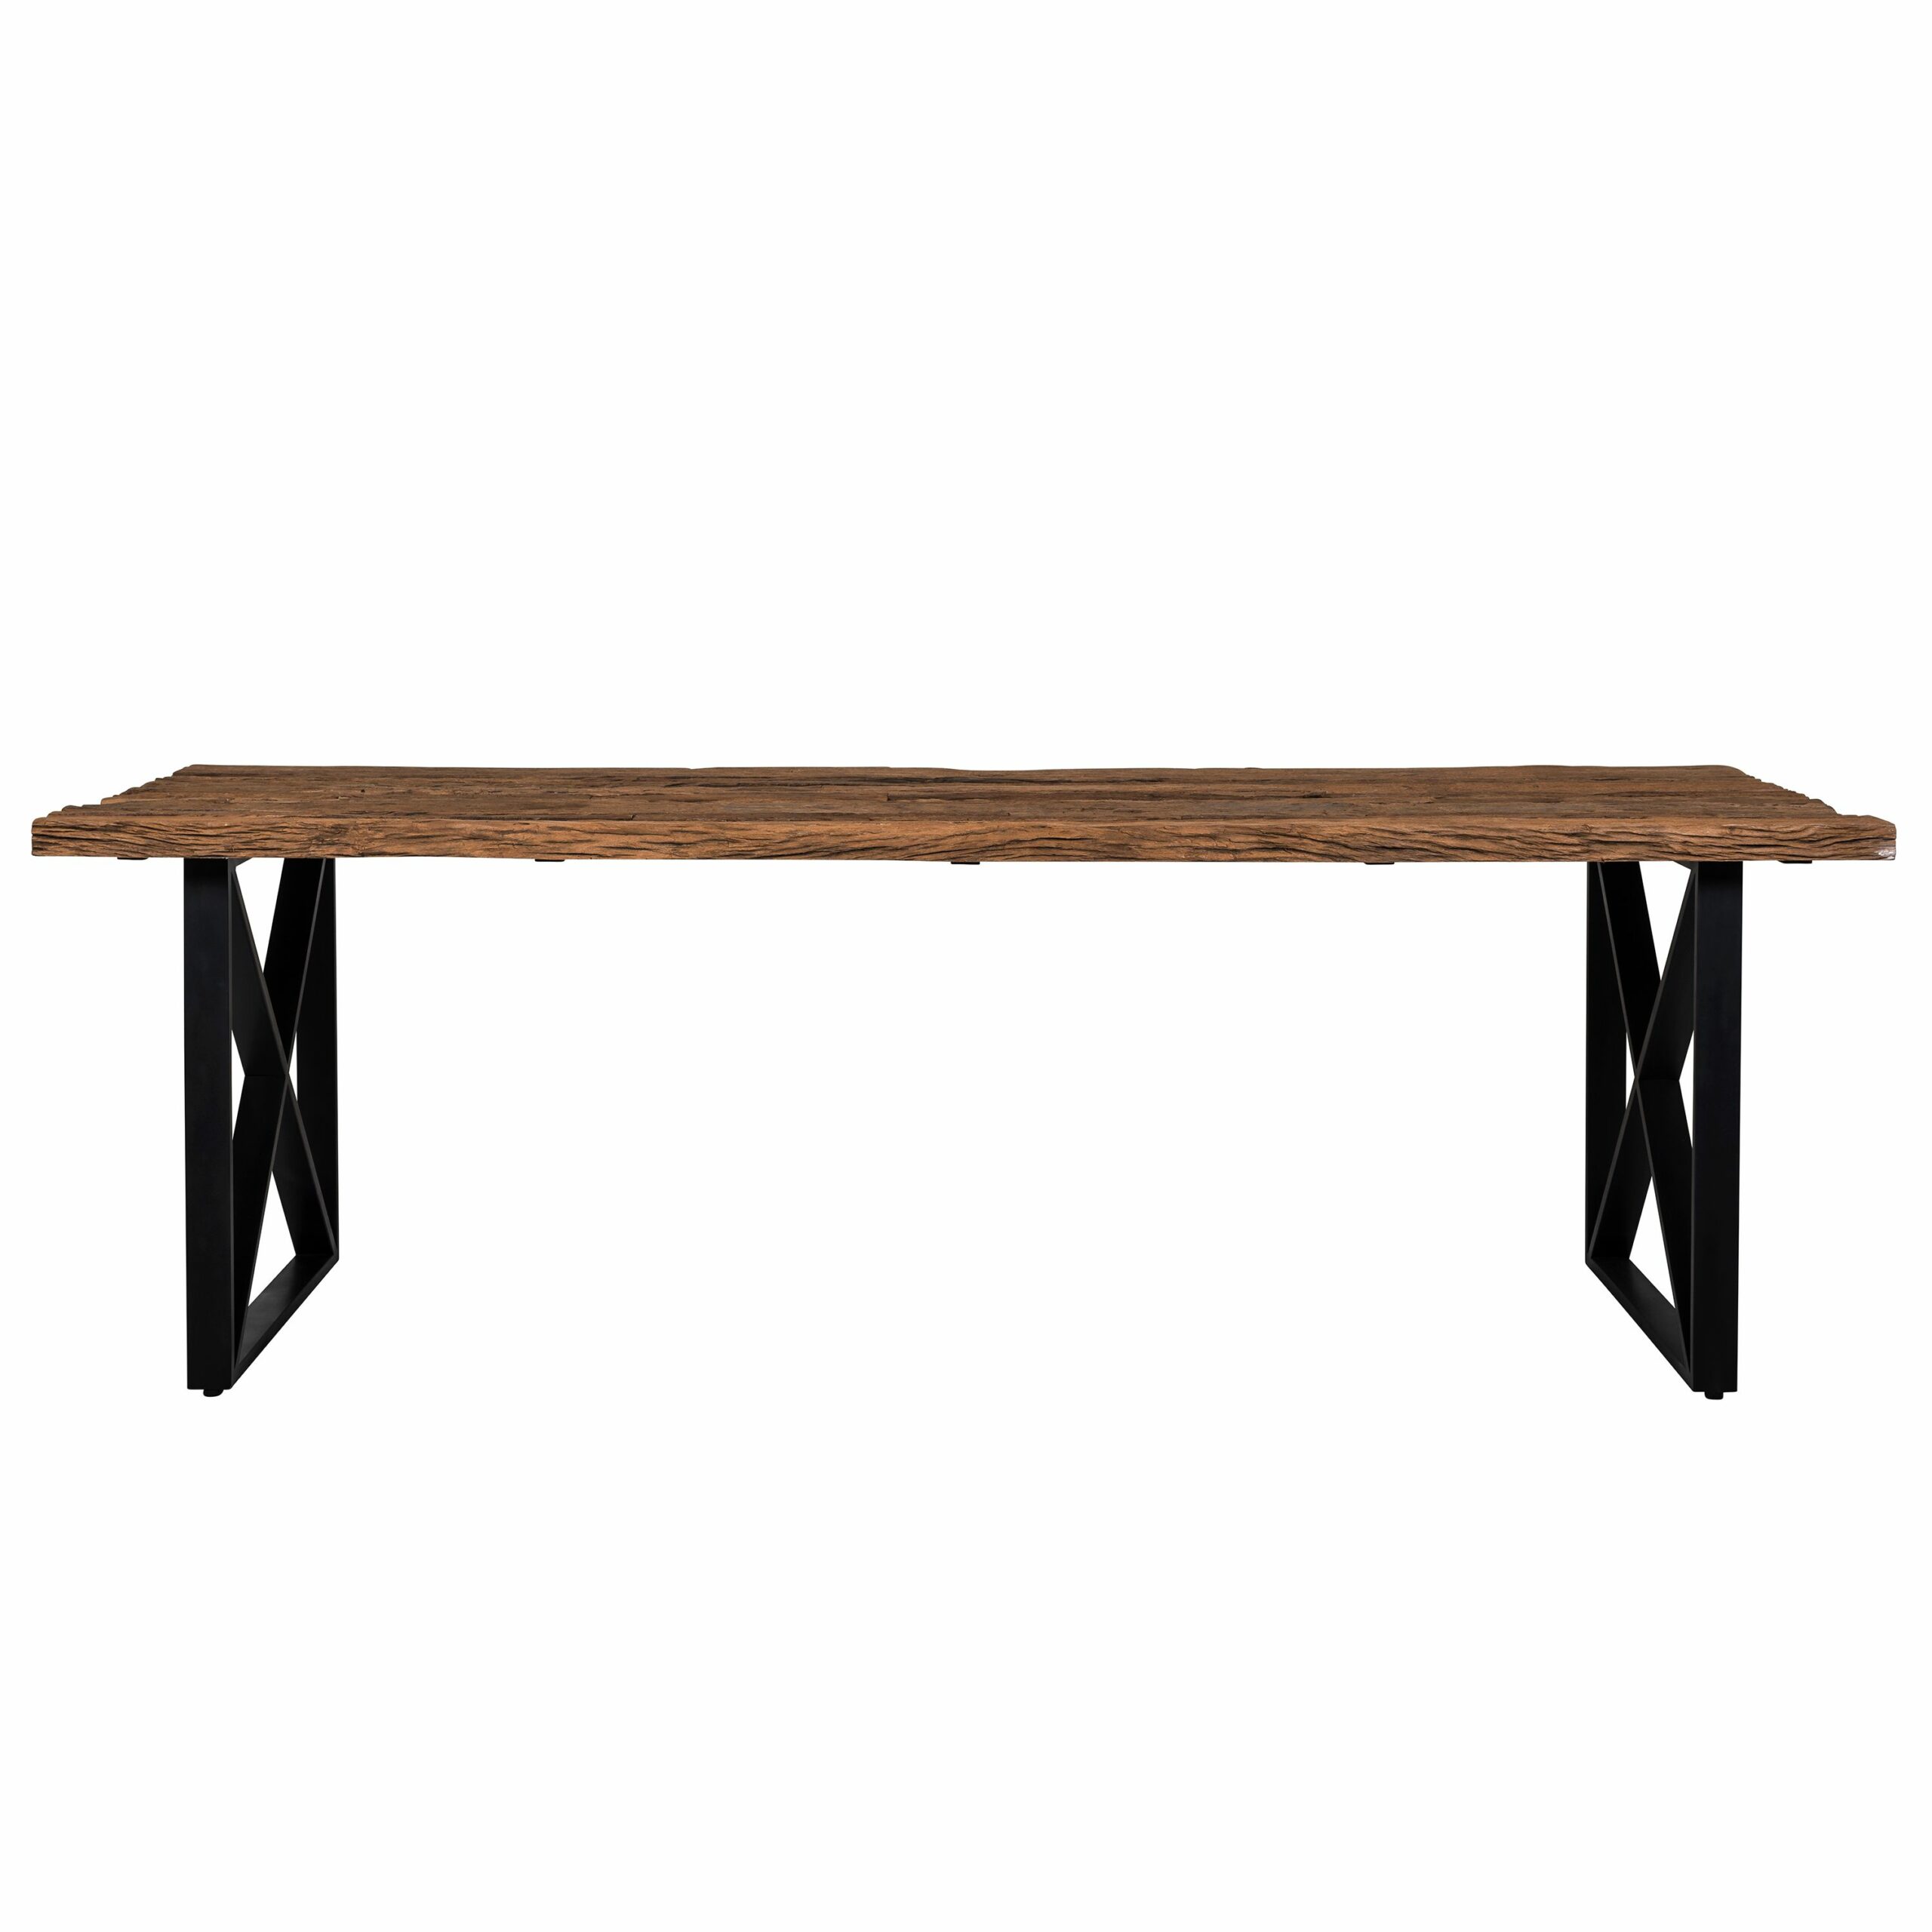 Table moderne bois brut et pied argent métal chromé - KENSINGTON